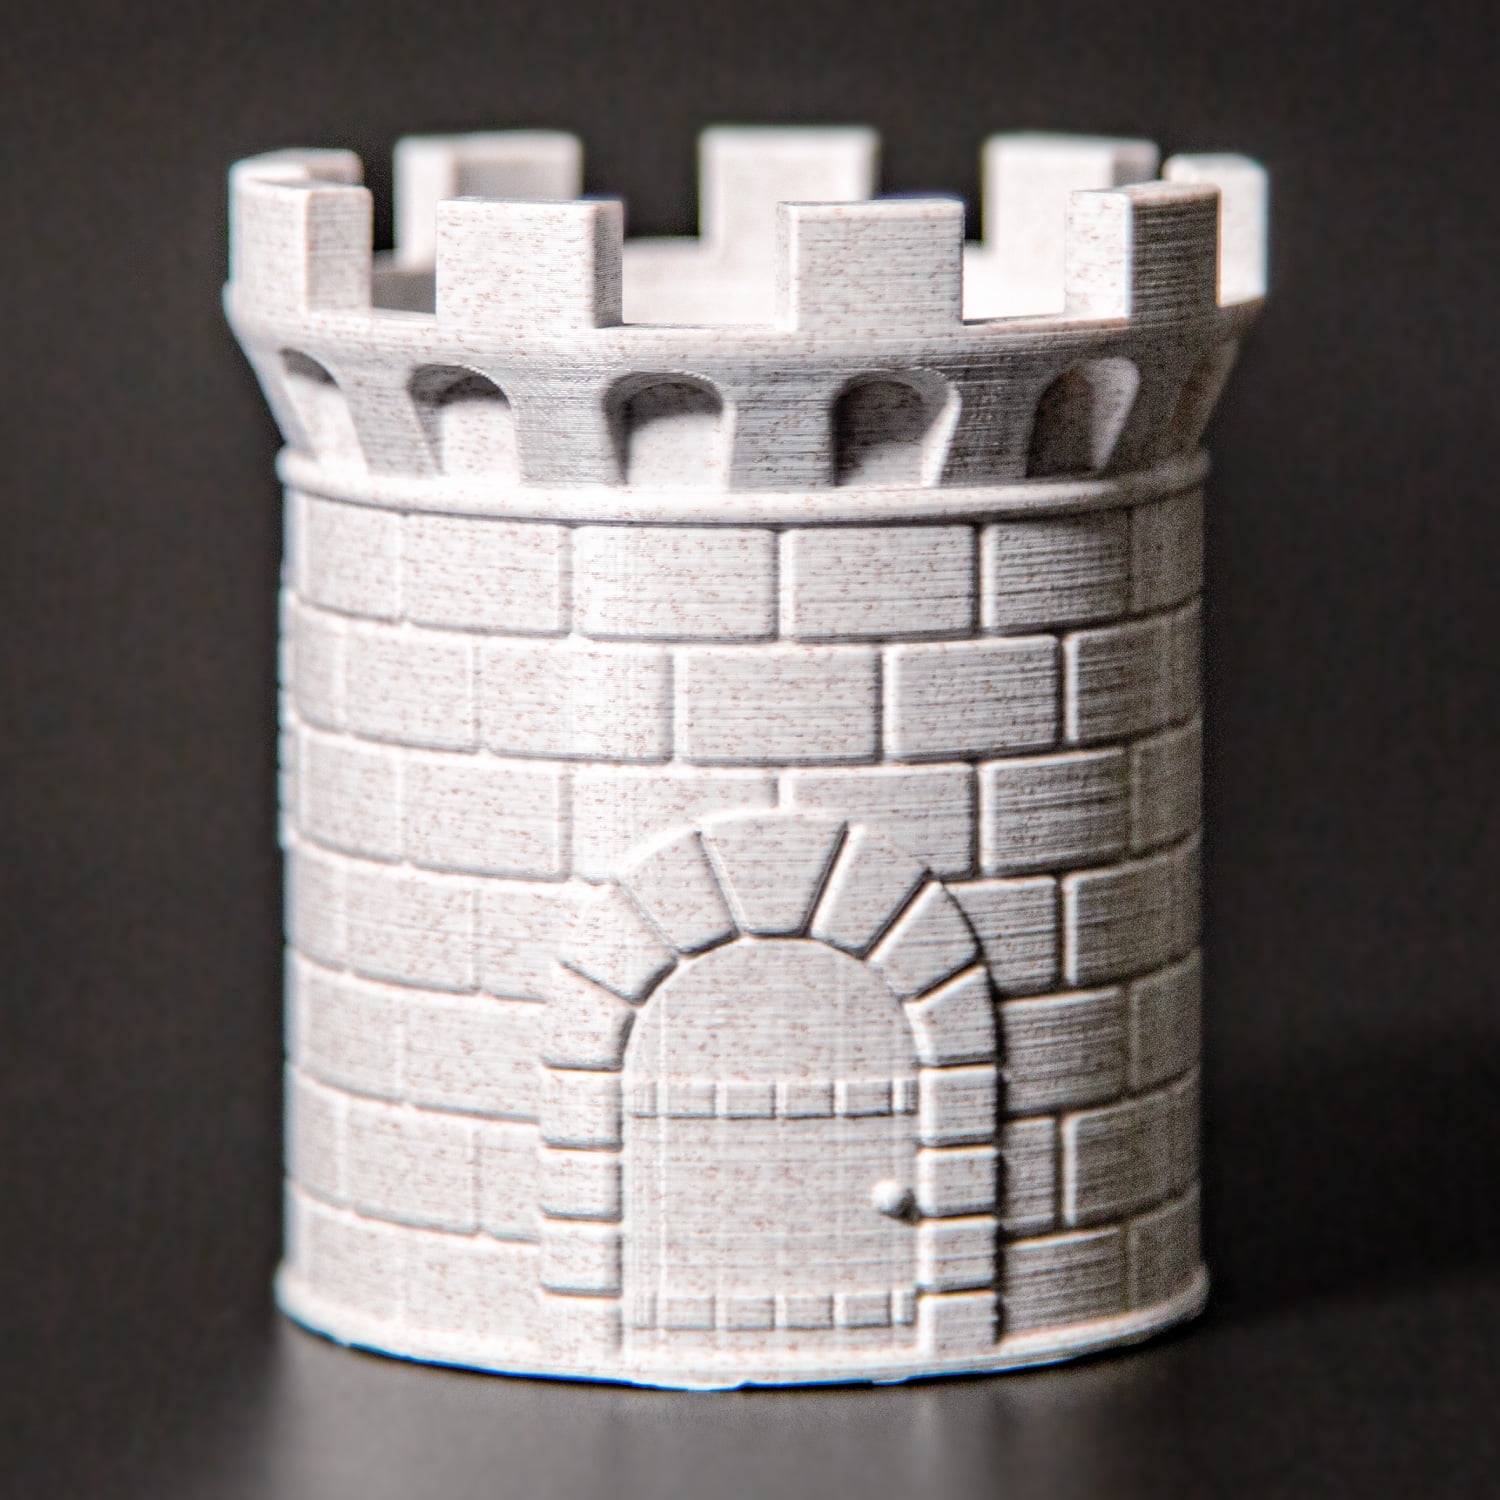 ACENIX® Grey PLA 3D Printer Filament 1.75mm 1KG Spool Filament for 3D Printing 